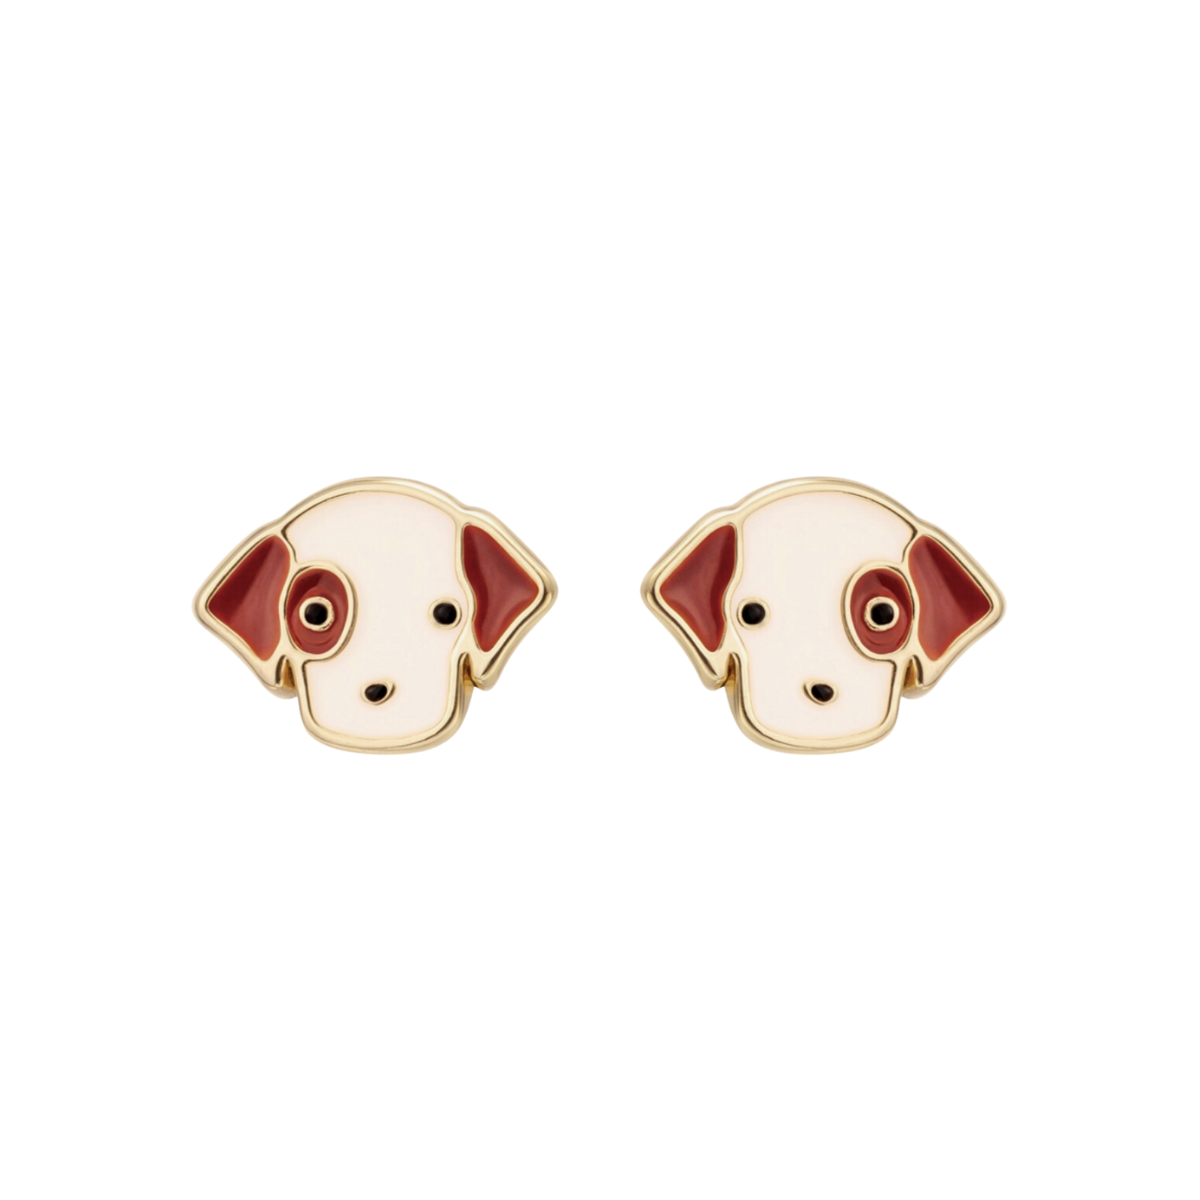 Puppy Stud Earrings